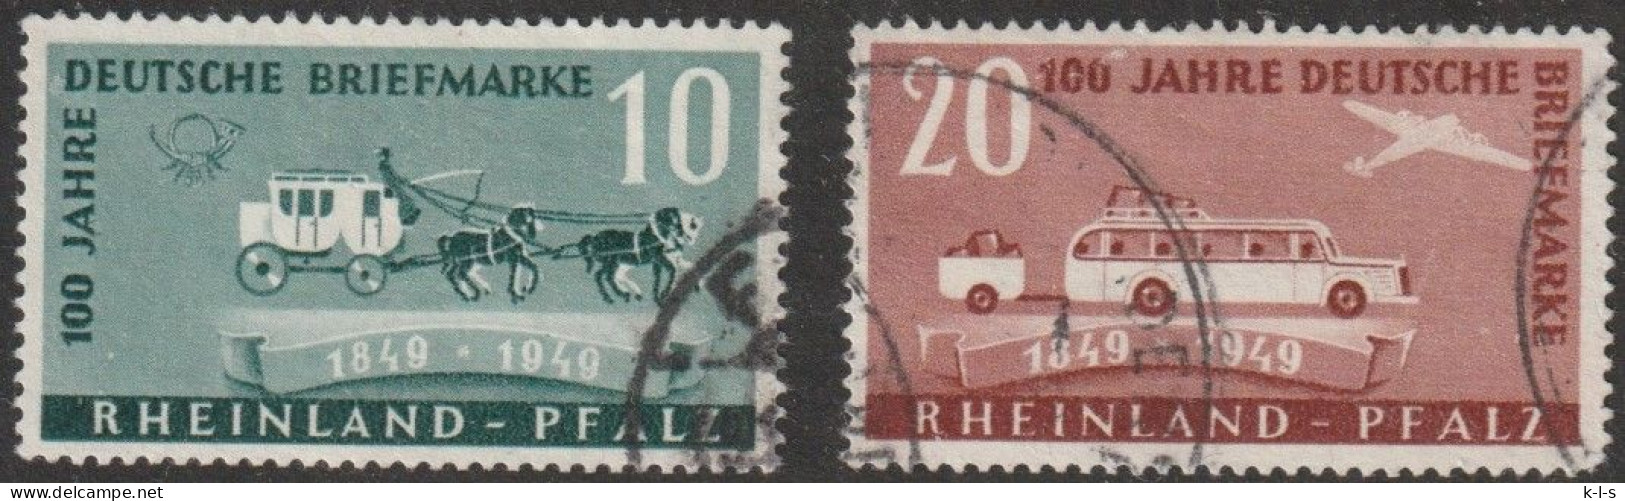 Franz. Zone- Rheinland Pfalz: 1949, Mi. Nr. 49-50,  100 Jahre Deutsche Briefmarken.  Gestpl./used - Rhénanie-Palatinat